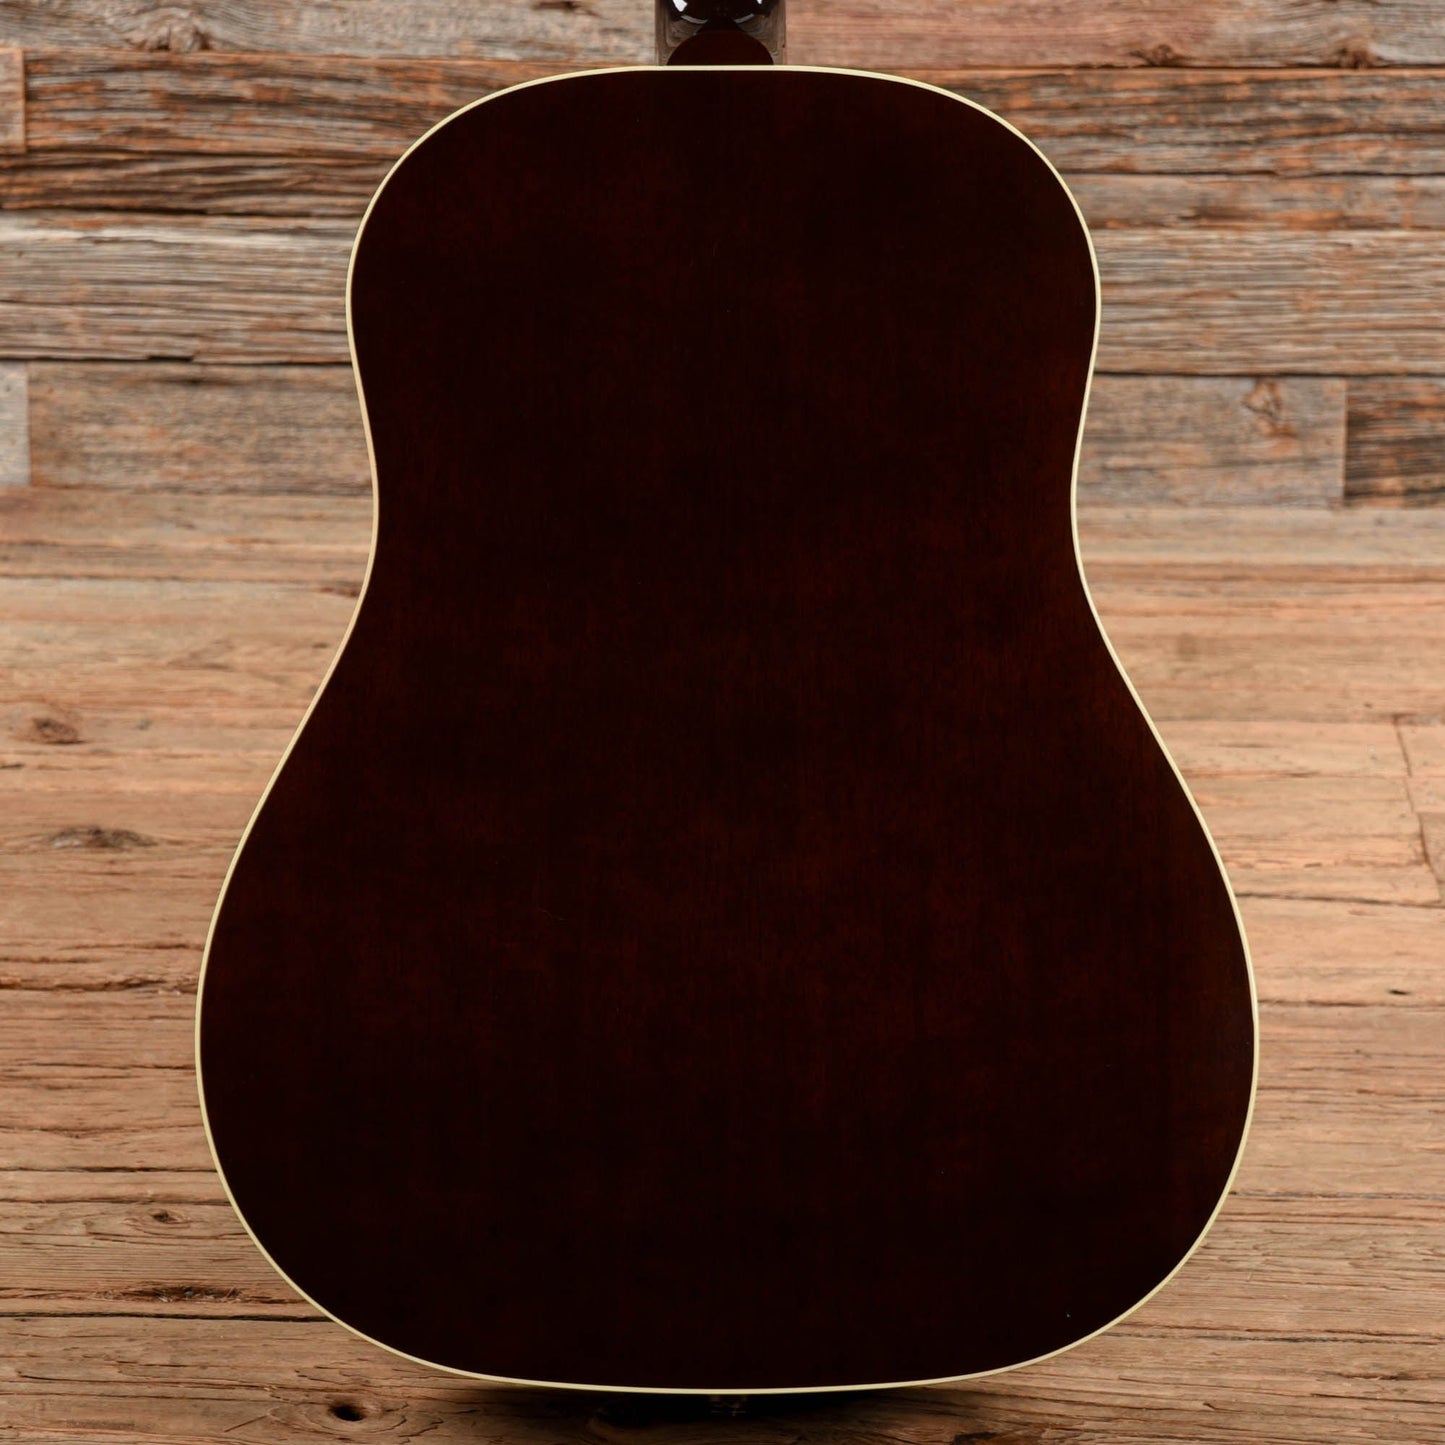 Gibson J-45 Standard Sunburst 2023 Acoustic Guitars / Jumbo